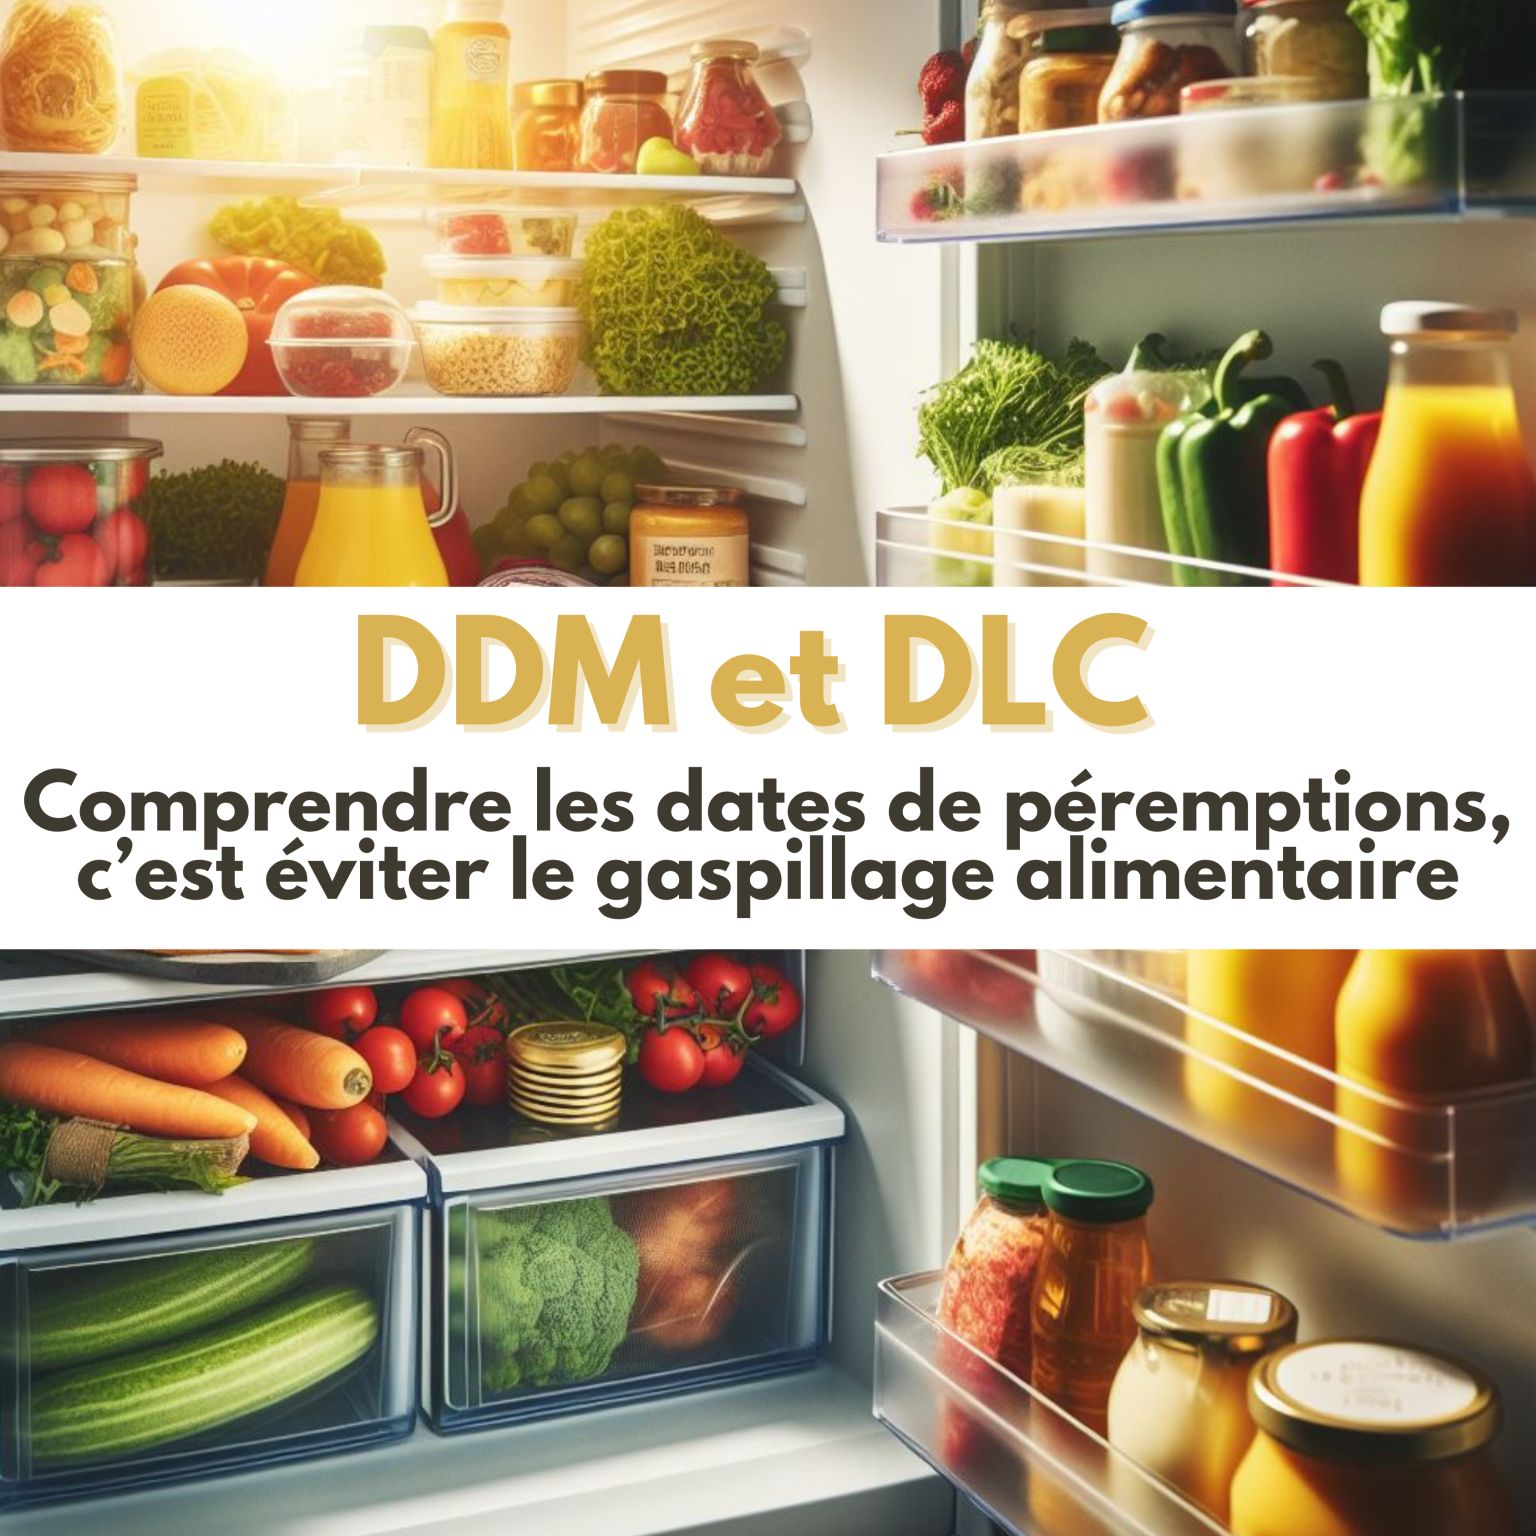 You are currently viewing L’optimisation des Dates de Durabilité Minimale (DDM) et des Dates Limite de Consommation (DLC) afin de réduire le gaspillage alimentaire